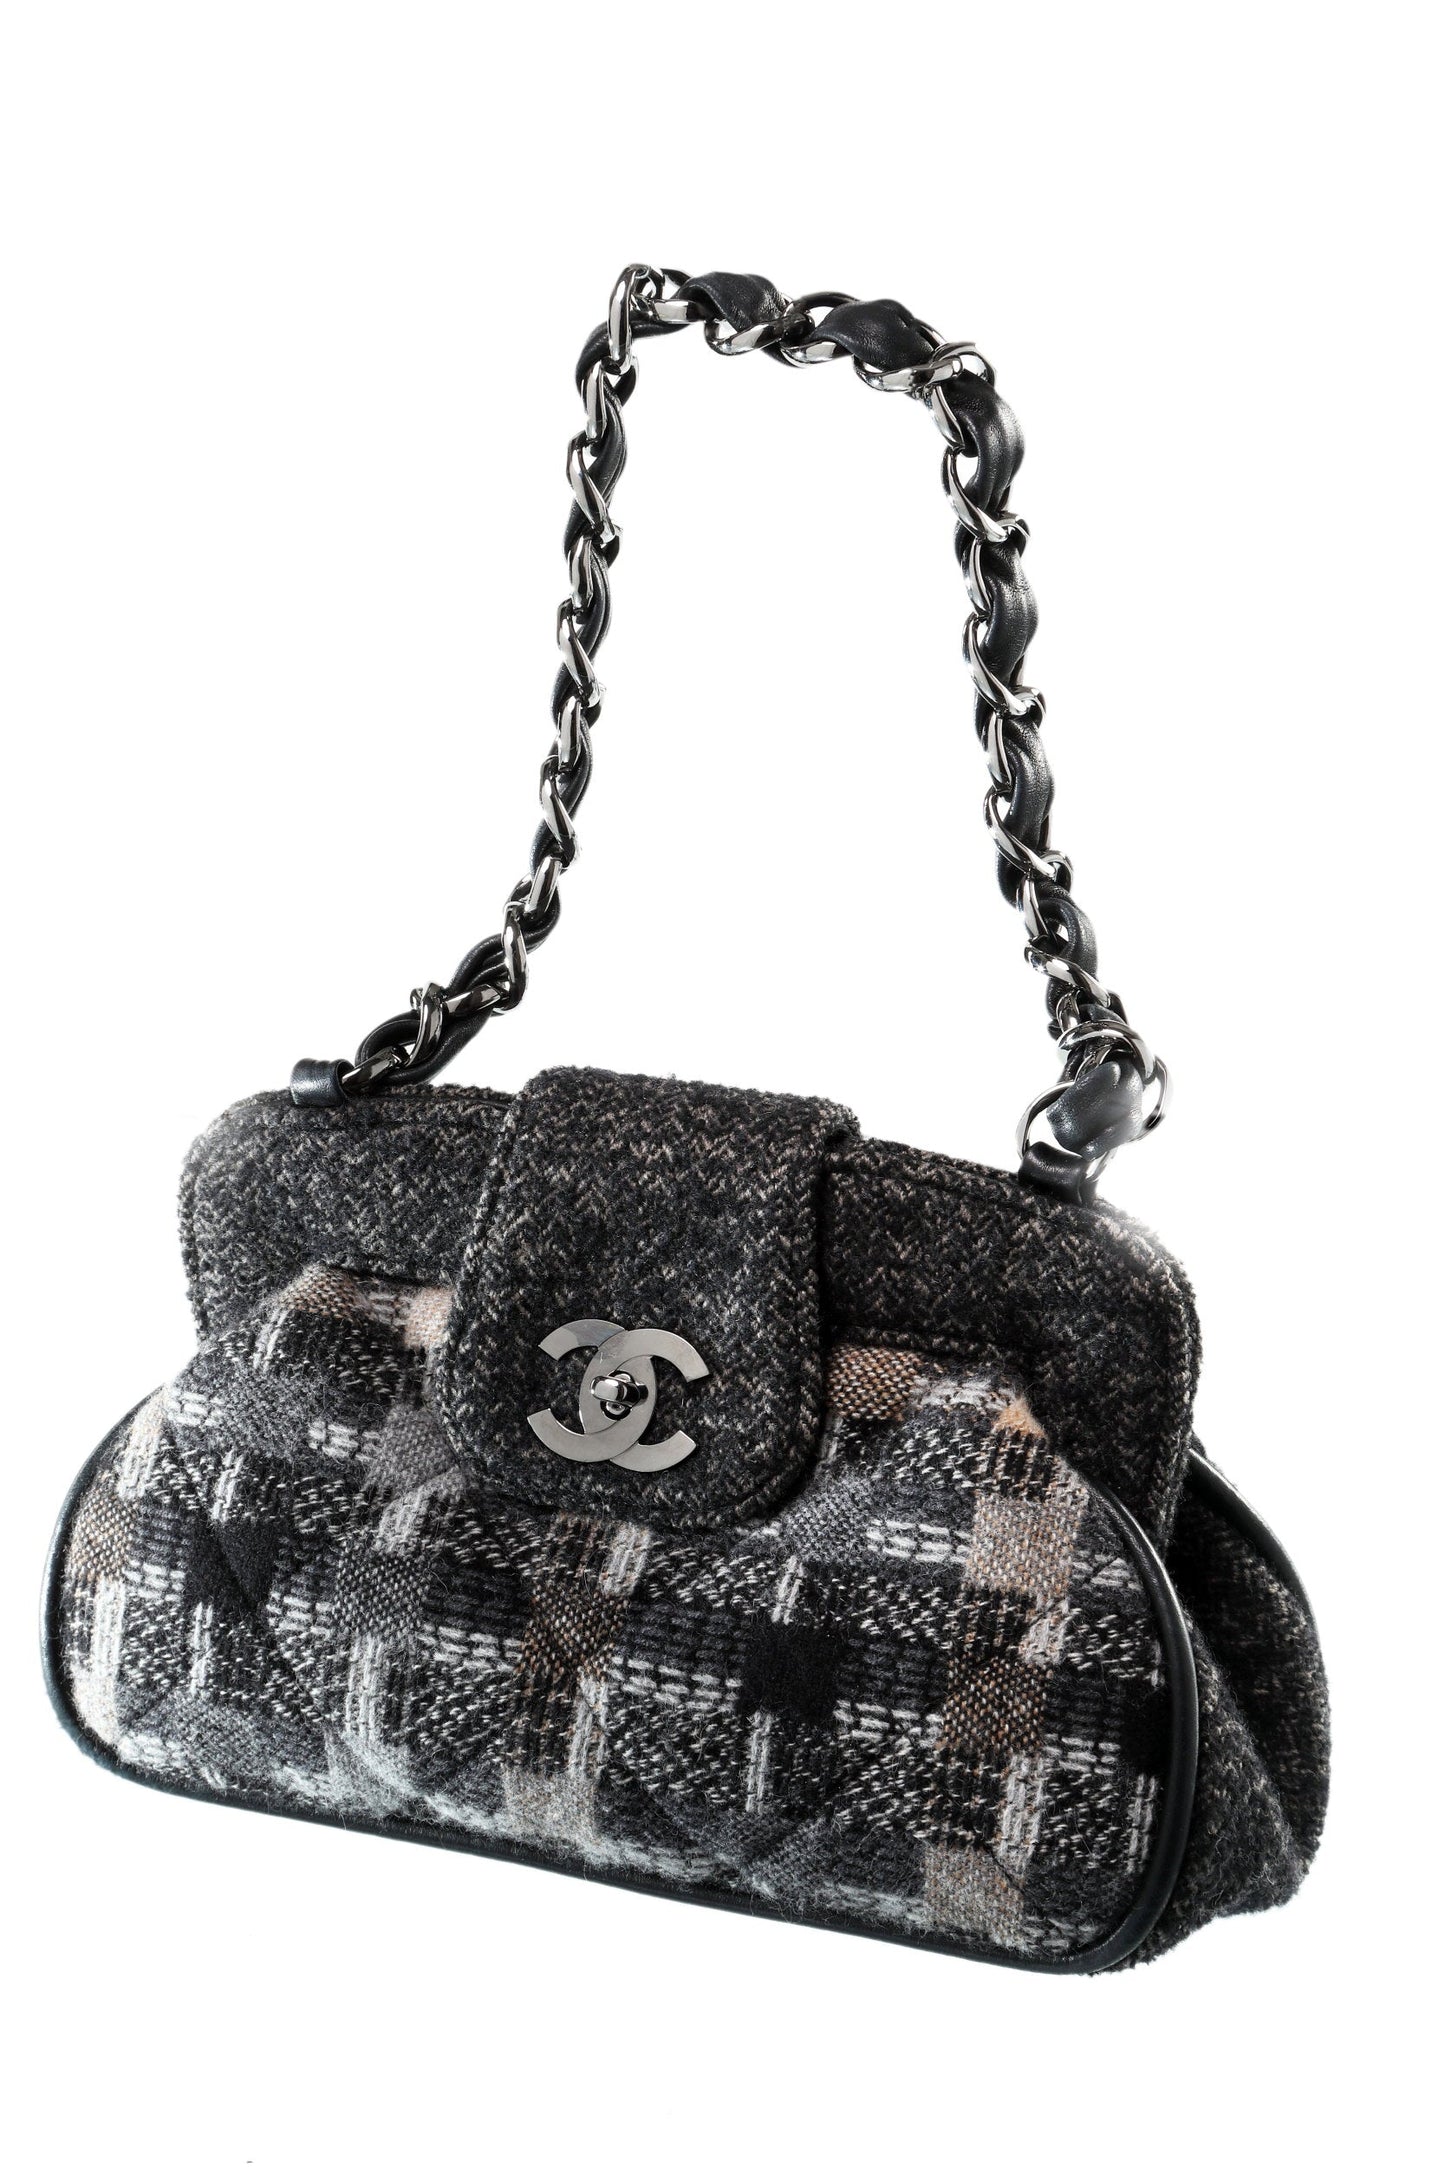 Chanel 90s tweed wool handbag